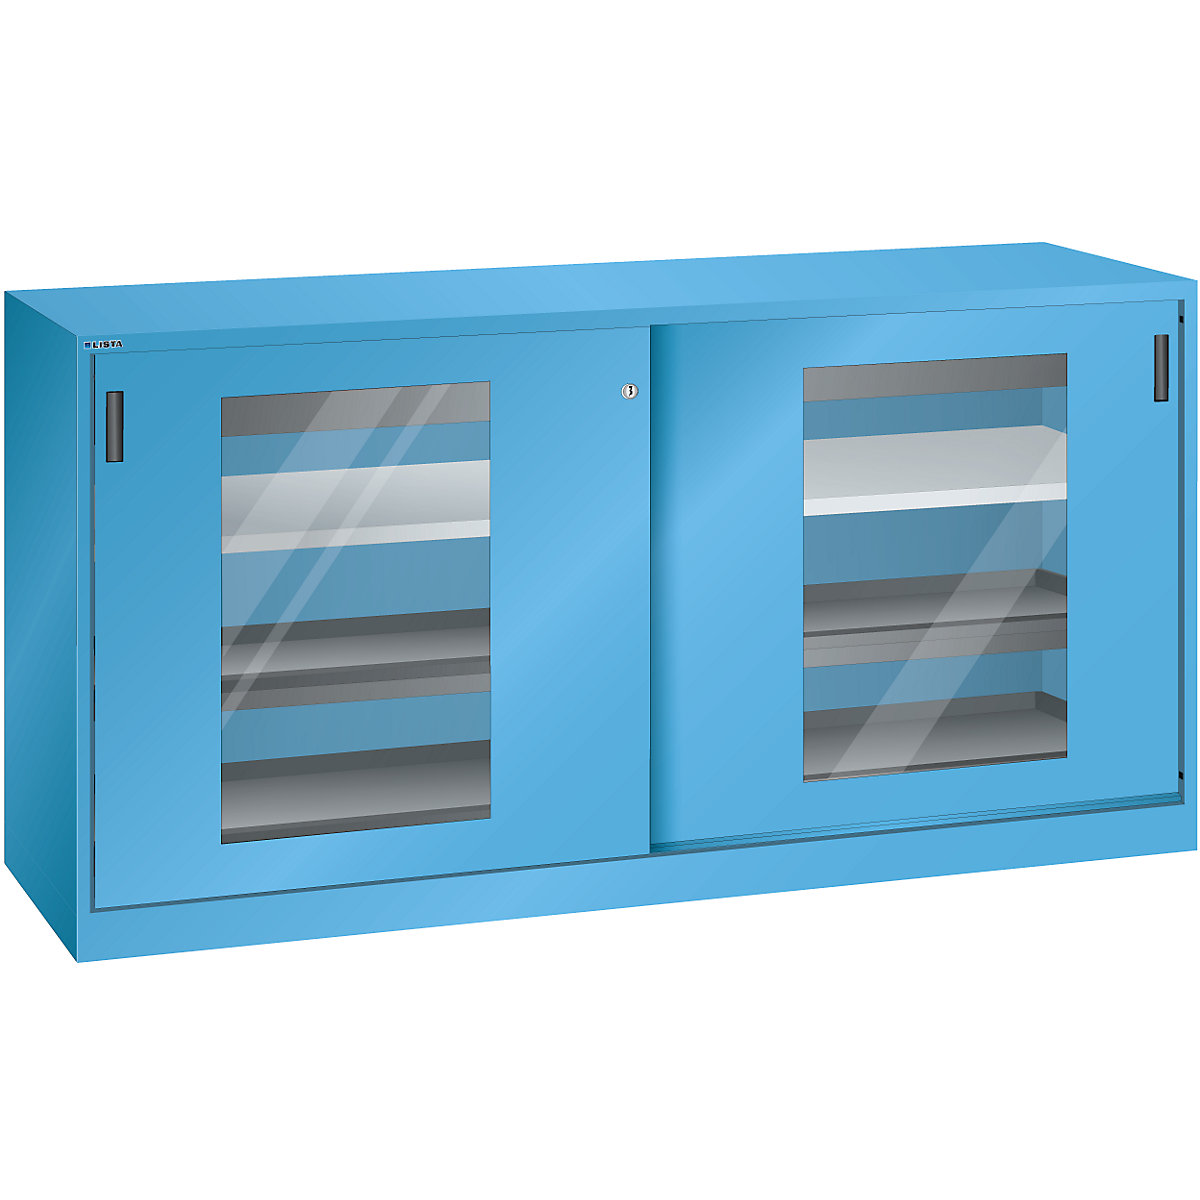 Armário de portas de correr com janelas de visualização – LISTA, 2 prateleiras, 4 prateleiras extraíveis, 2 gavetas, azul claro-8